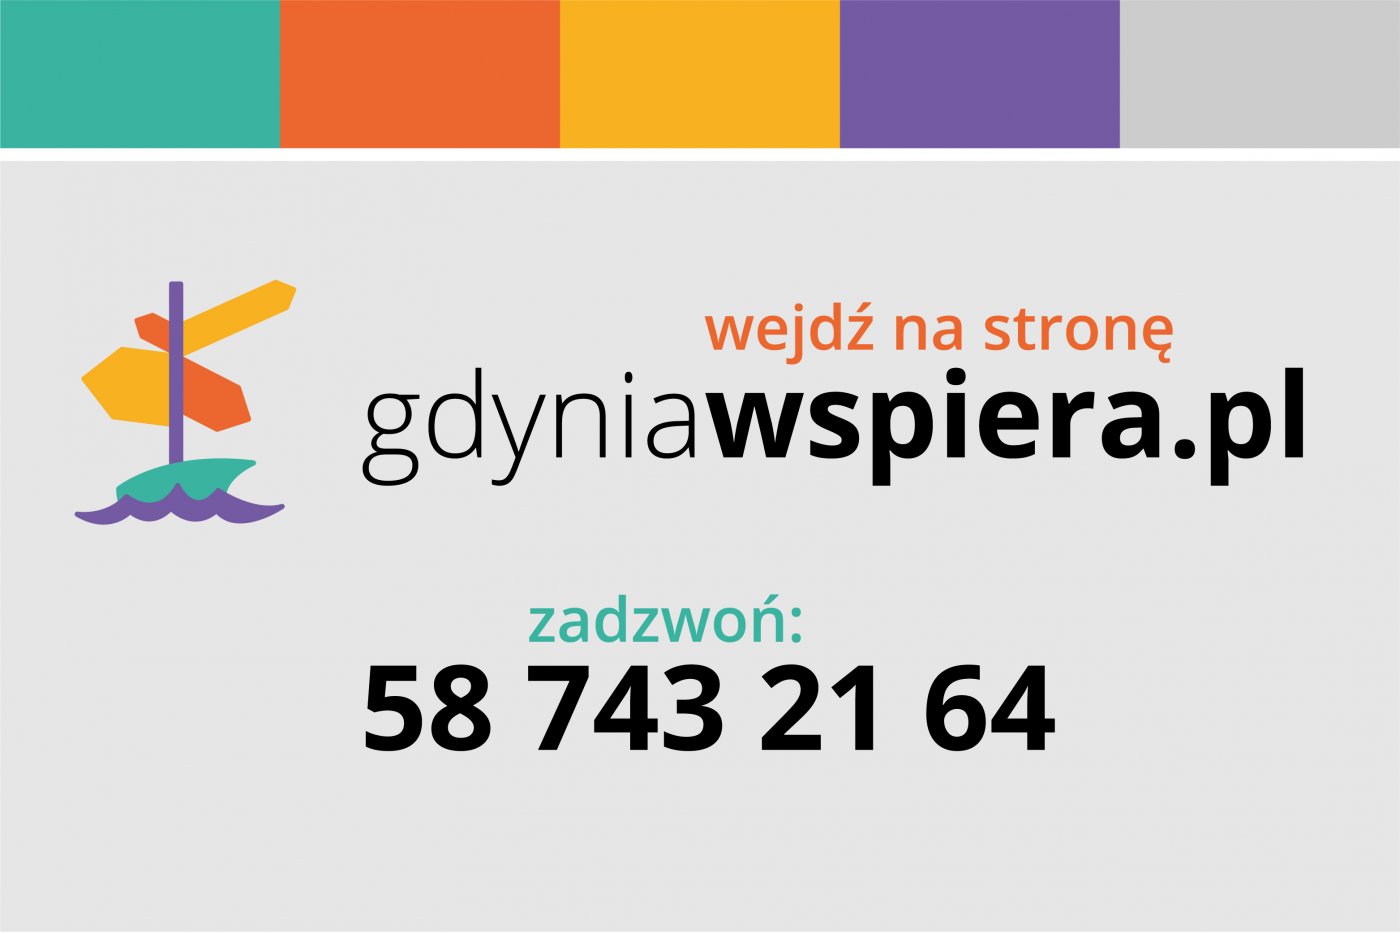 Na stronie gdyniawspiera.pl i pod specjalnym numerem telefonu można szukać ważnych informacji na czas pandemii